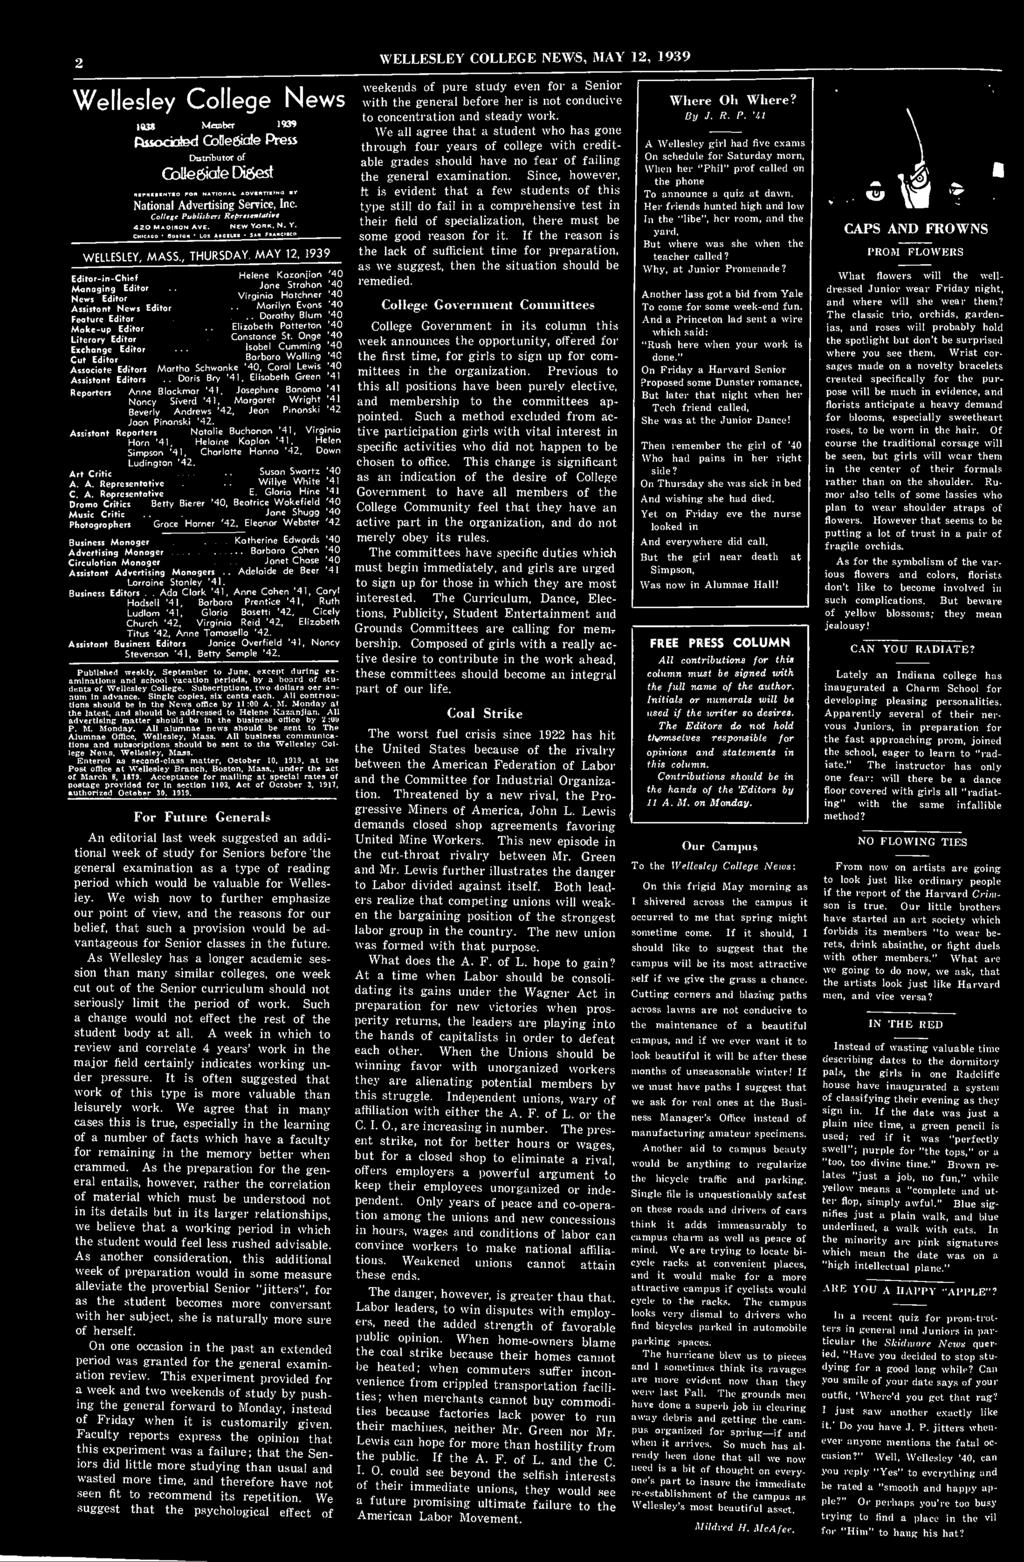 , THURSDAY MAY 12, 1939 Edtor-n-Chef Helene Kazonjan '40 Managng Edtor Jone Strohan '40 News Edtor Vrgna Horchner '40 Assstant News Edtor Morlyn Evons '40.